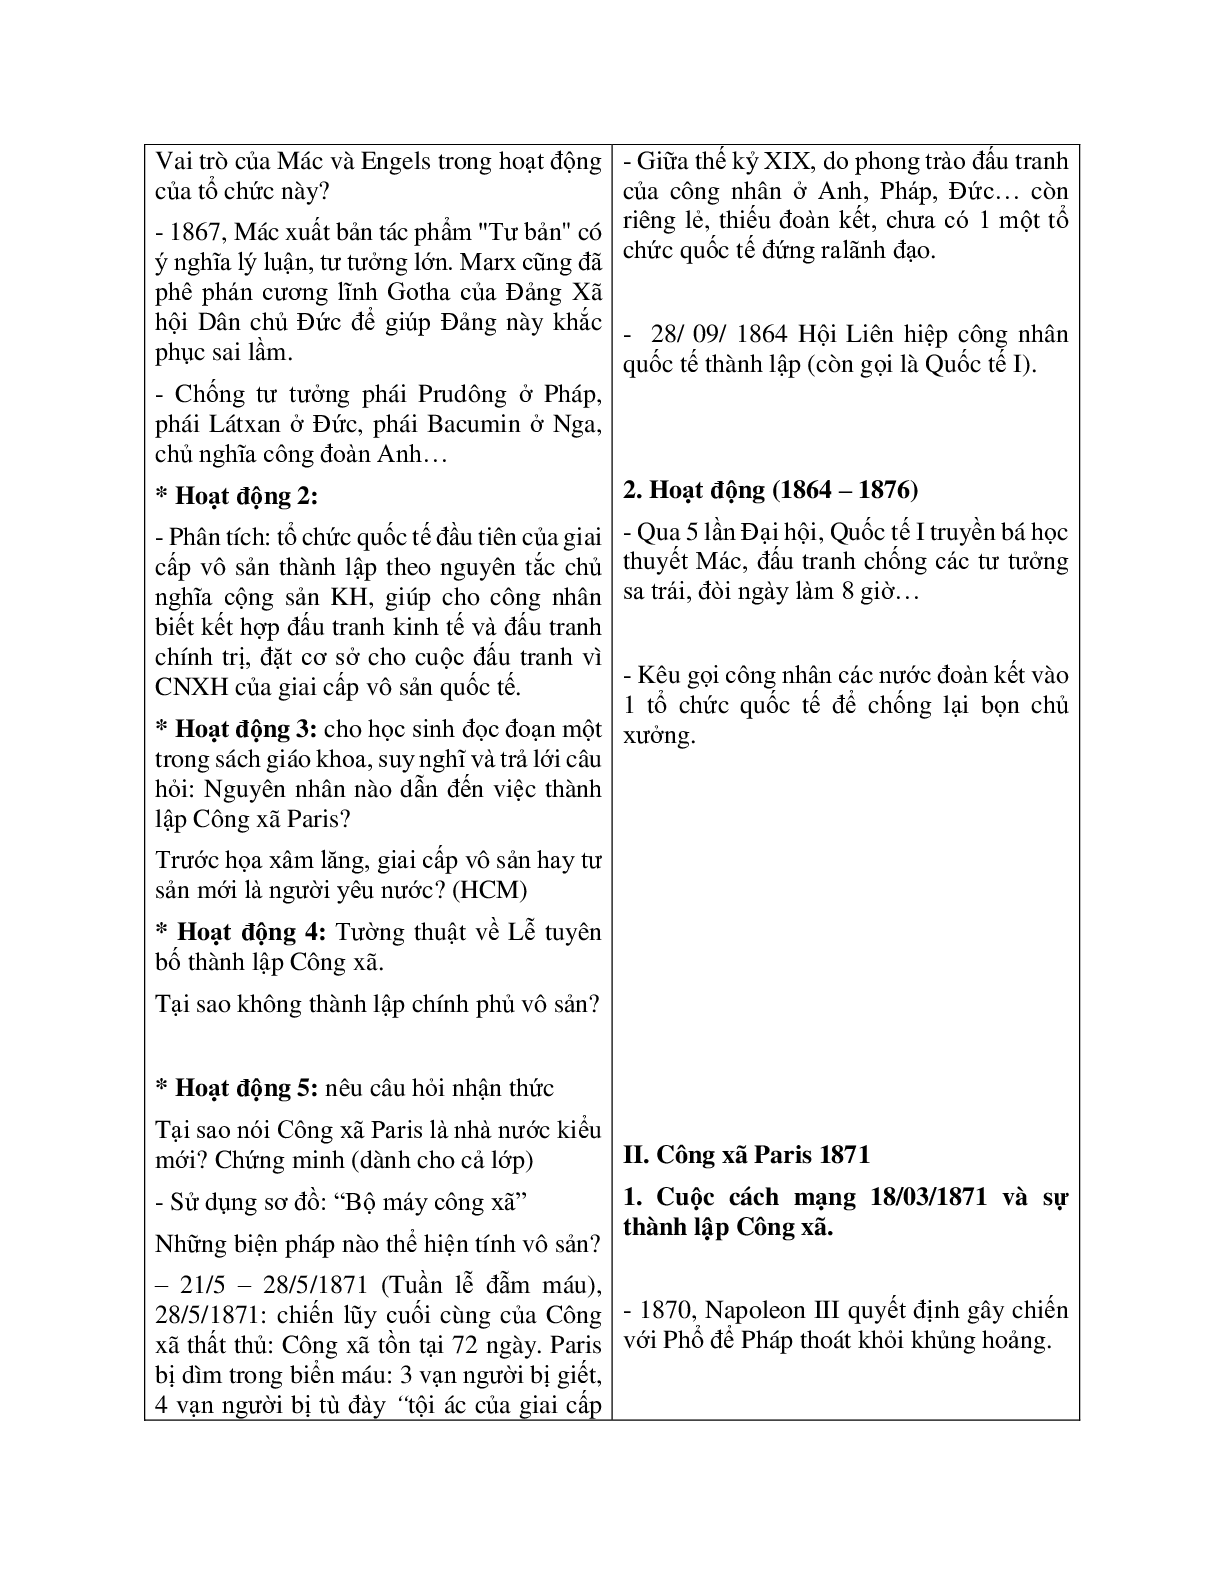 Giáo án Lịch sử 10 bài 38 Quốc tế thứ nhất và Công xã Pa ri 1871 mới nhất (trang 2)